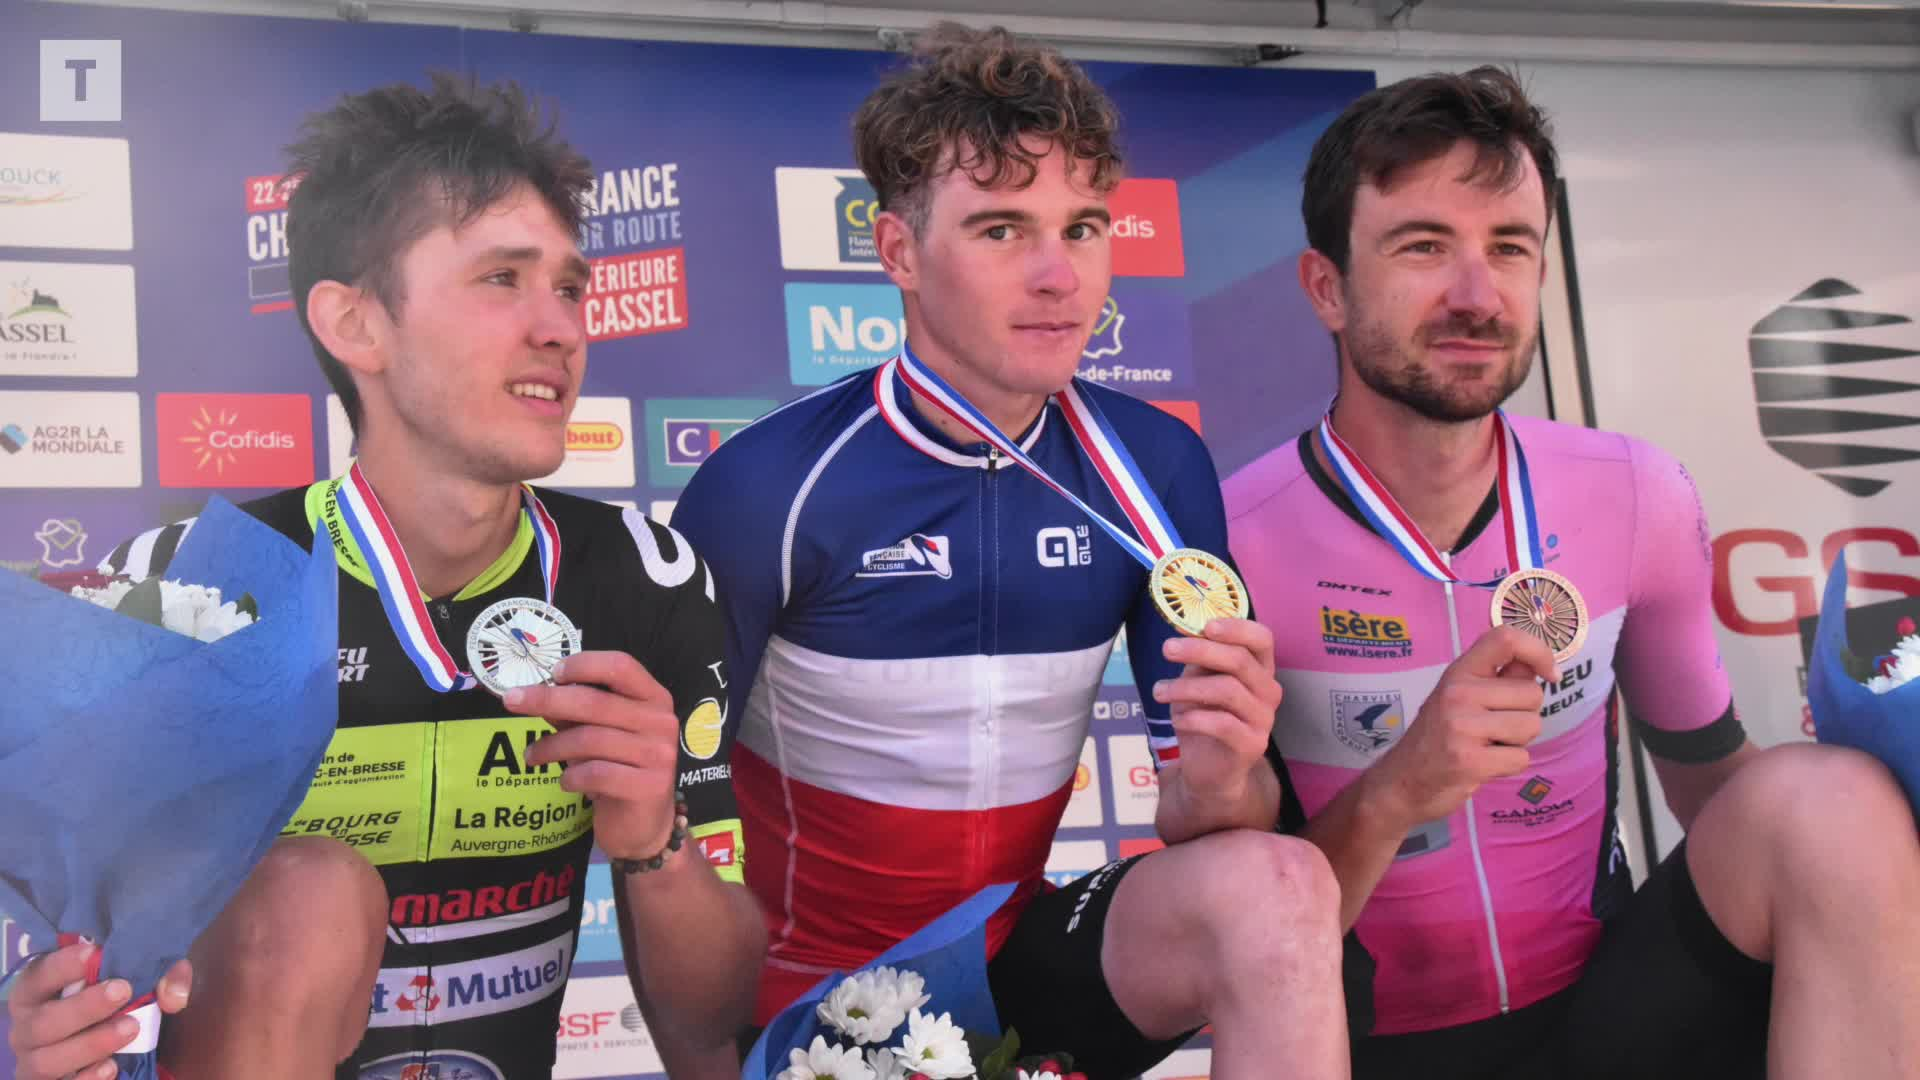 Cyclisme : Killian Verschuren, le champion de France n'avait jamais levé les bras [Vidéo]